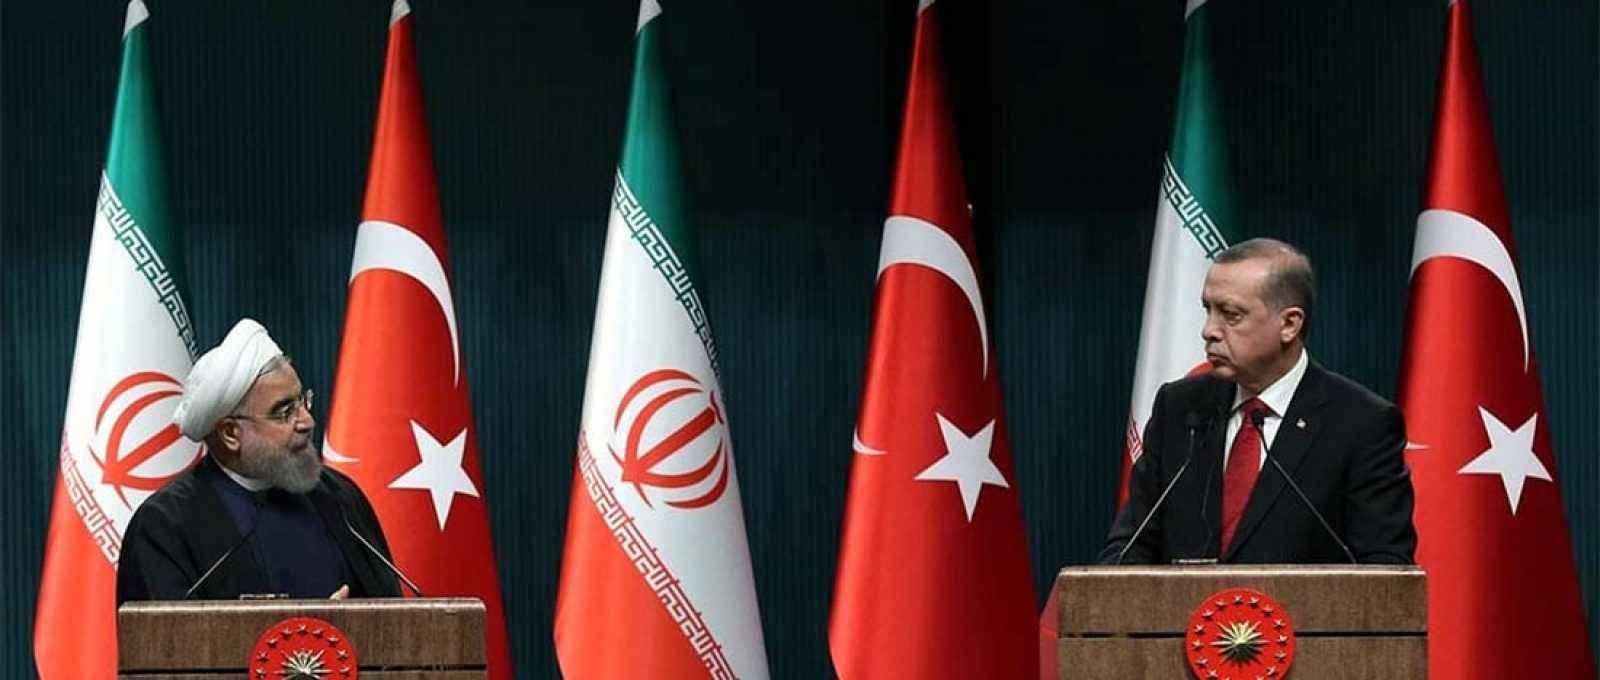 O então presidente do Irã, Hassan Rouhani (esq.), e o presidente da Turquia, Recep Tayyip Erdogan (dir.), em uma coletiva de imprensa conjunta após seu encontro no Complexo Presidencial, em Ancara, Turquia, em 16 de abril de 2016 (Rasit Aydoga/AFP).